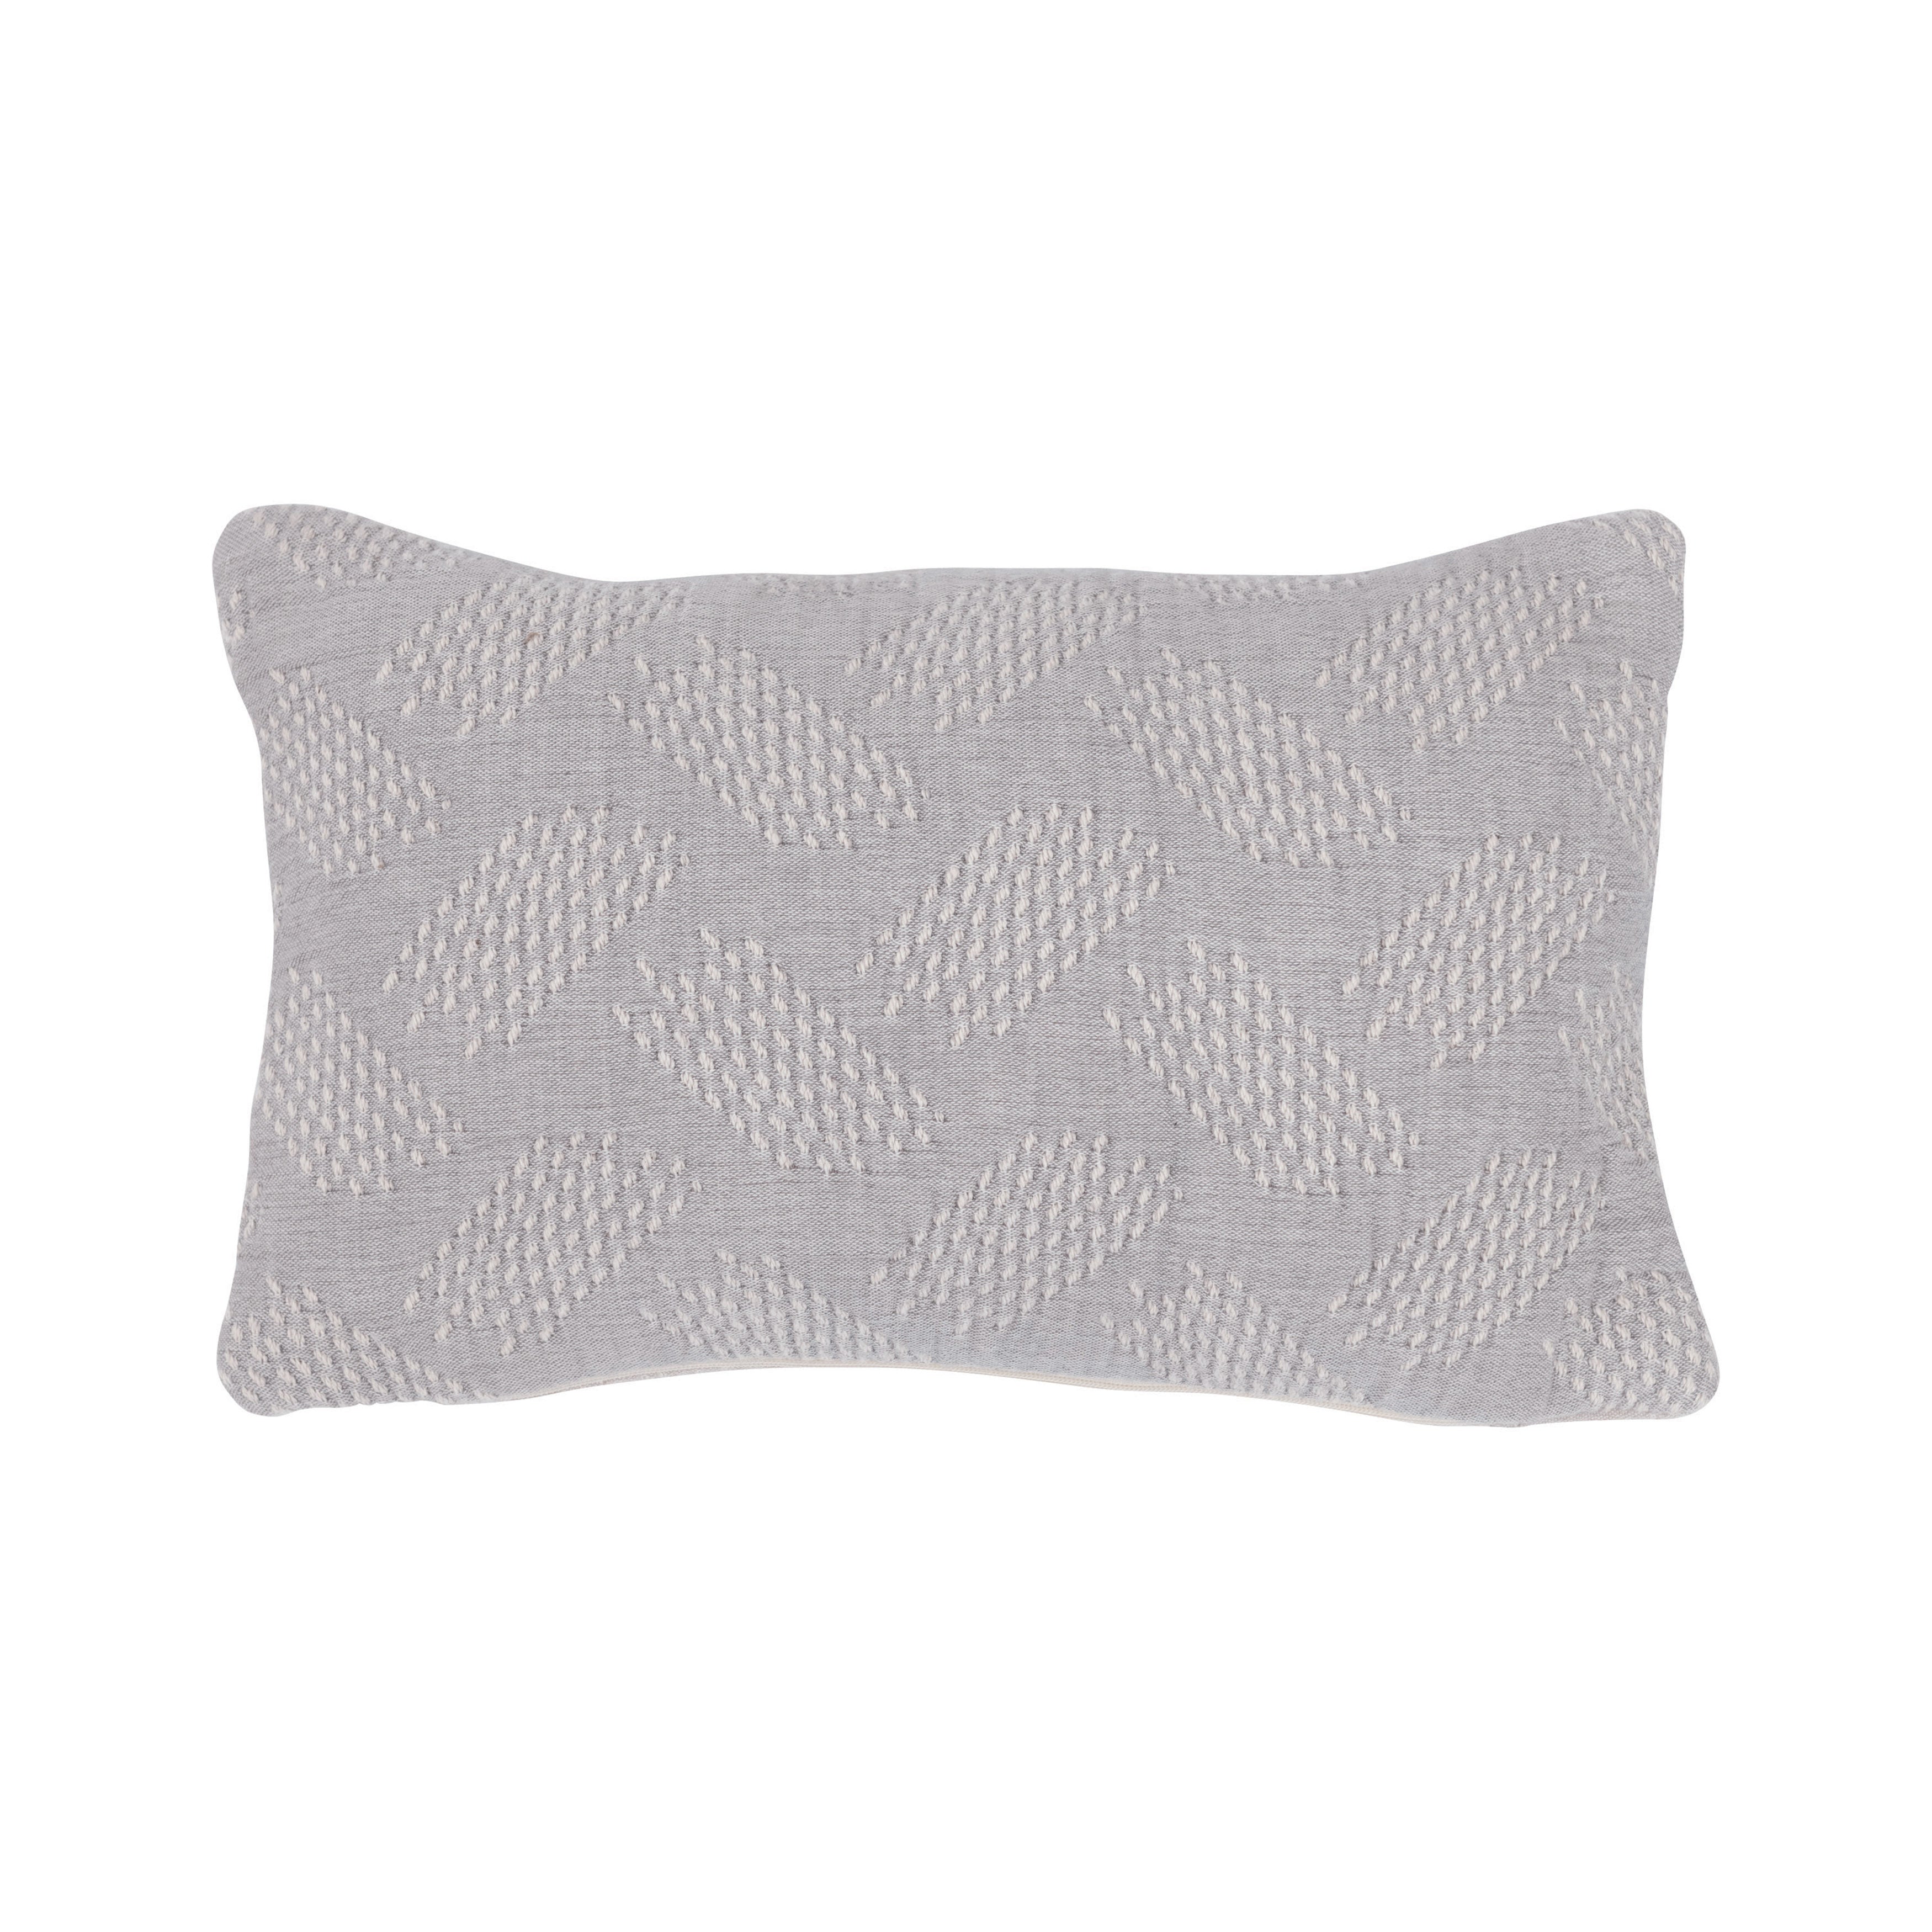 Grey and Cream Jacquard Lumbar Pillow